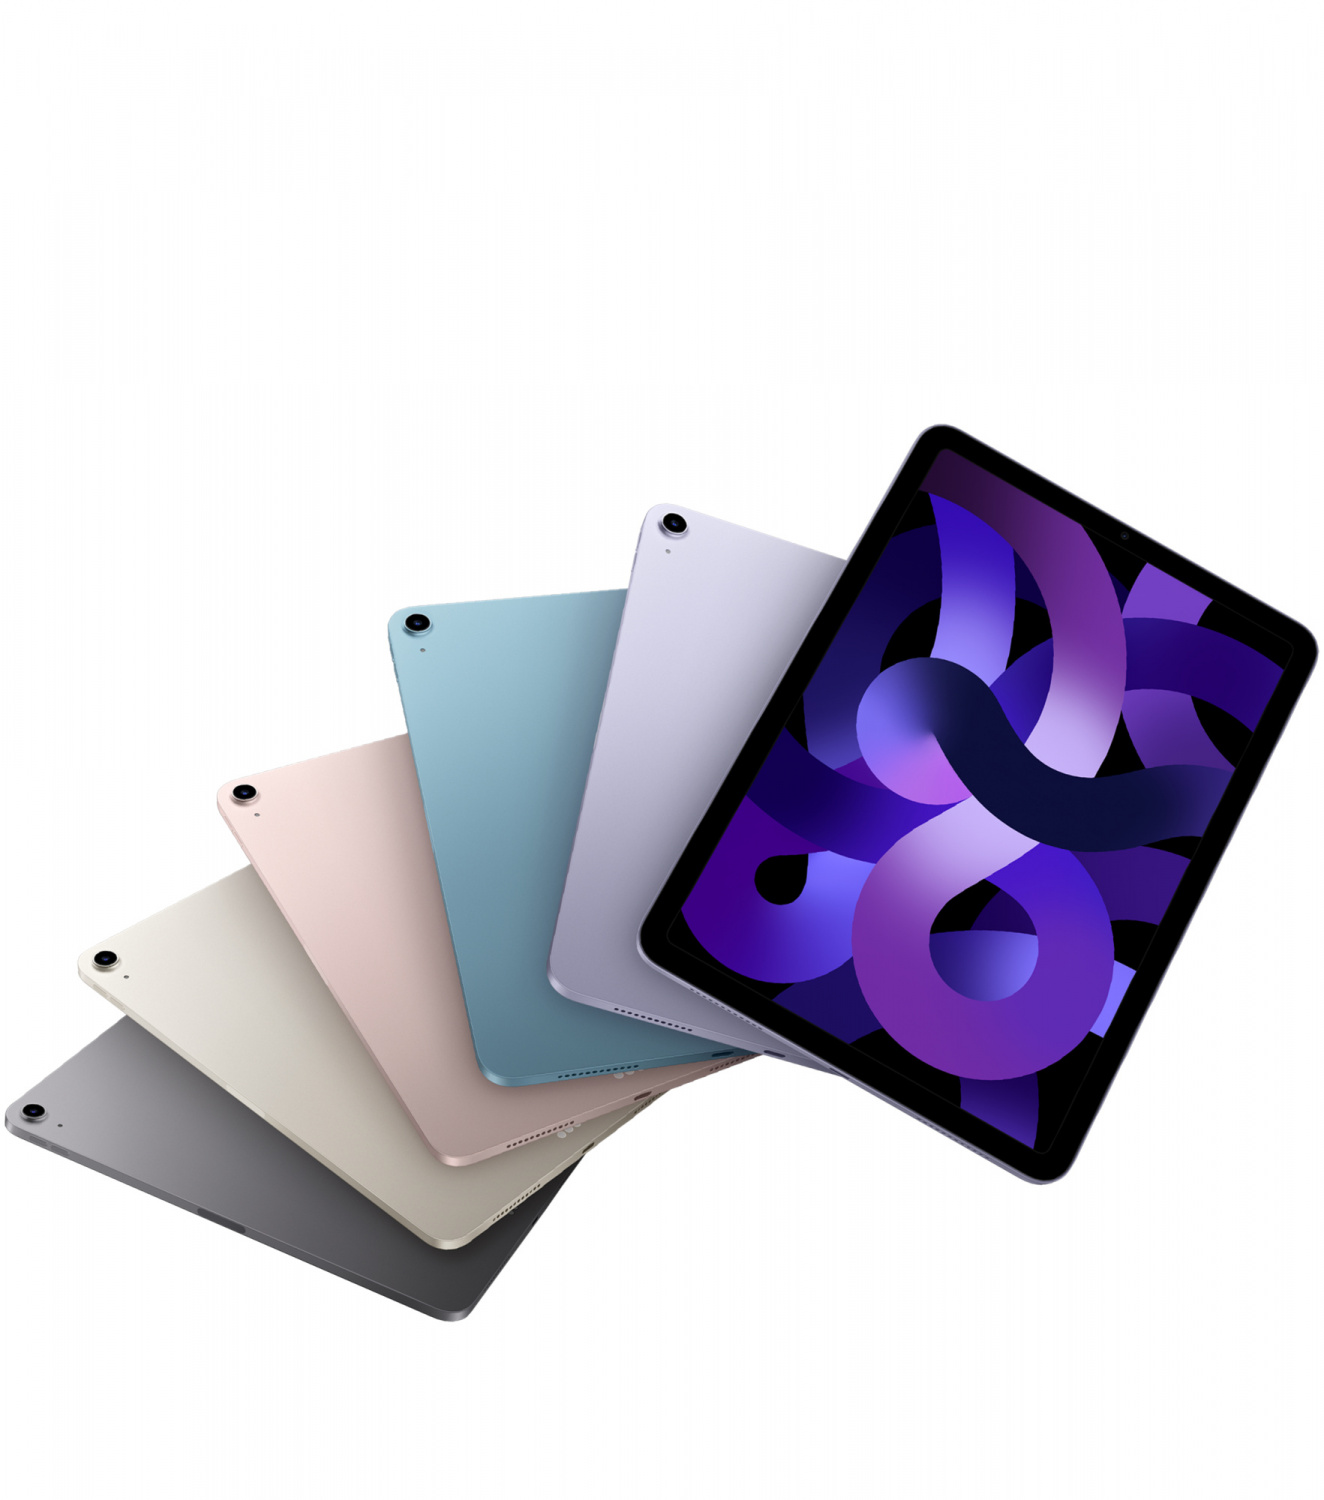 Купить планшет apple ipad air 5 поколение m1 2022  wi-fi 64 гб, space grey  Apple iPad Air в официальном магазине Apple, Samsung, Xiaomi. iPixel.ru Купить, заказ, кредит, рассрочка, отзывы,  характеристики, цена,  фотографии, в подарок.